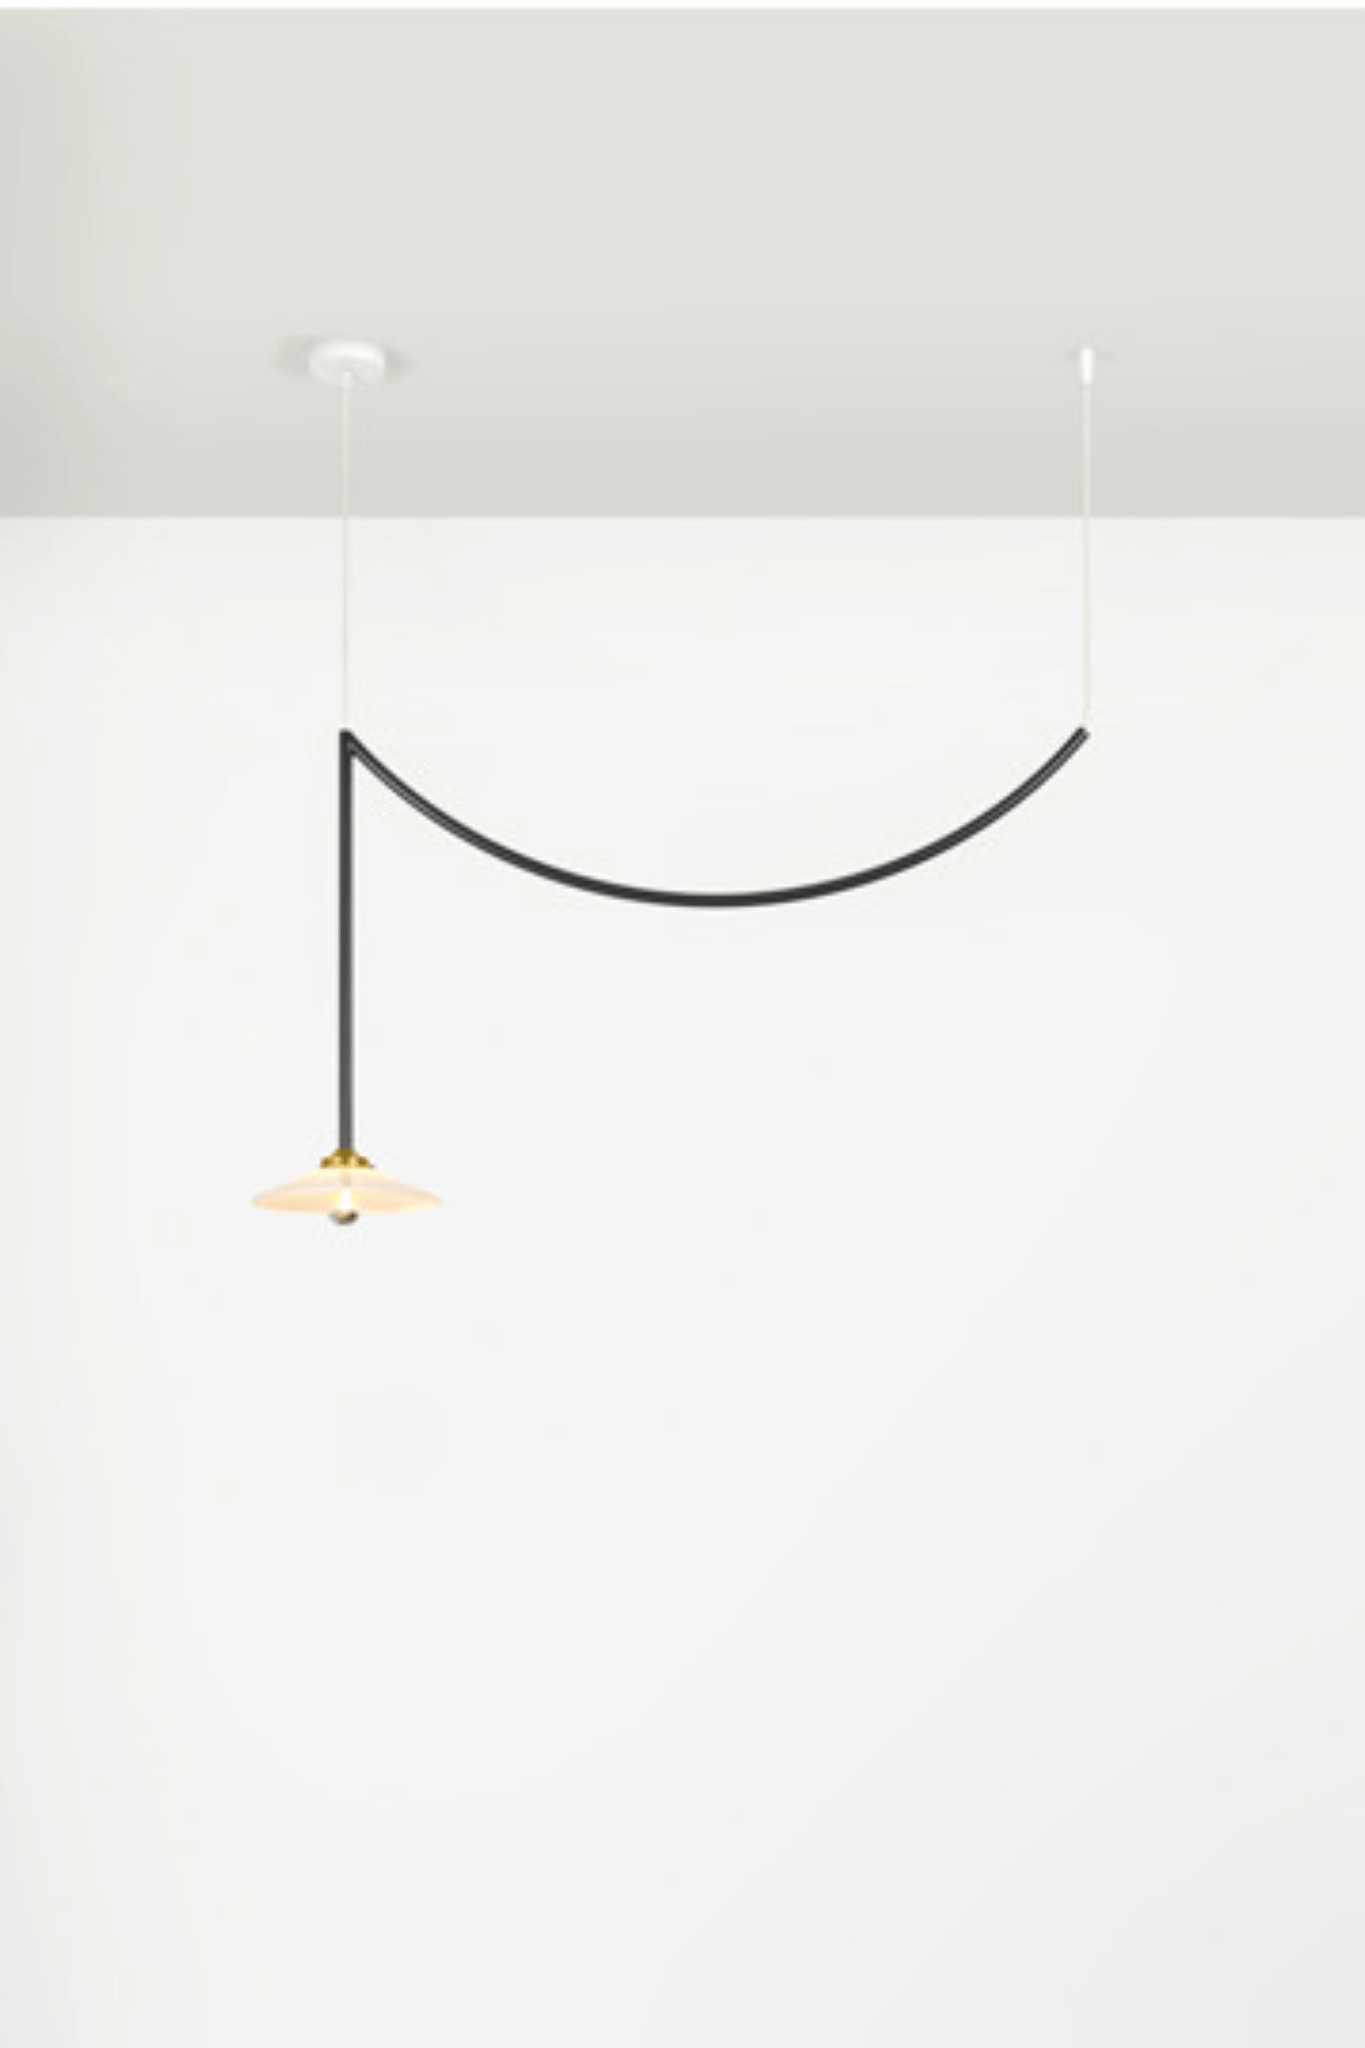 Black Ceiling Lamp N°5 Muller Van Severen Valerie Objects, shown lit